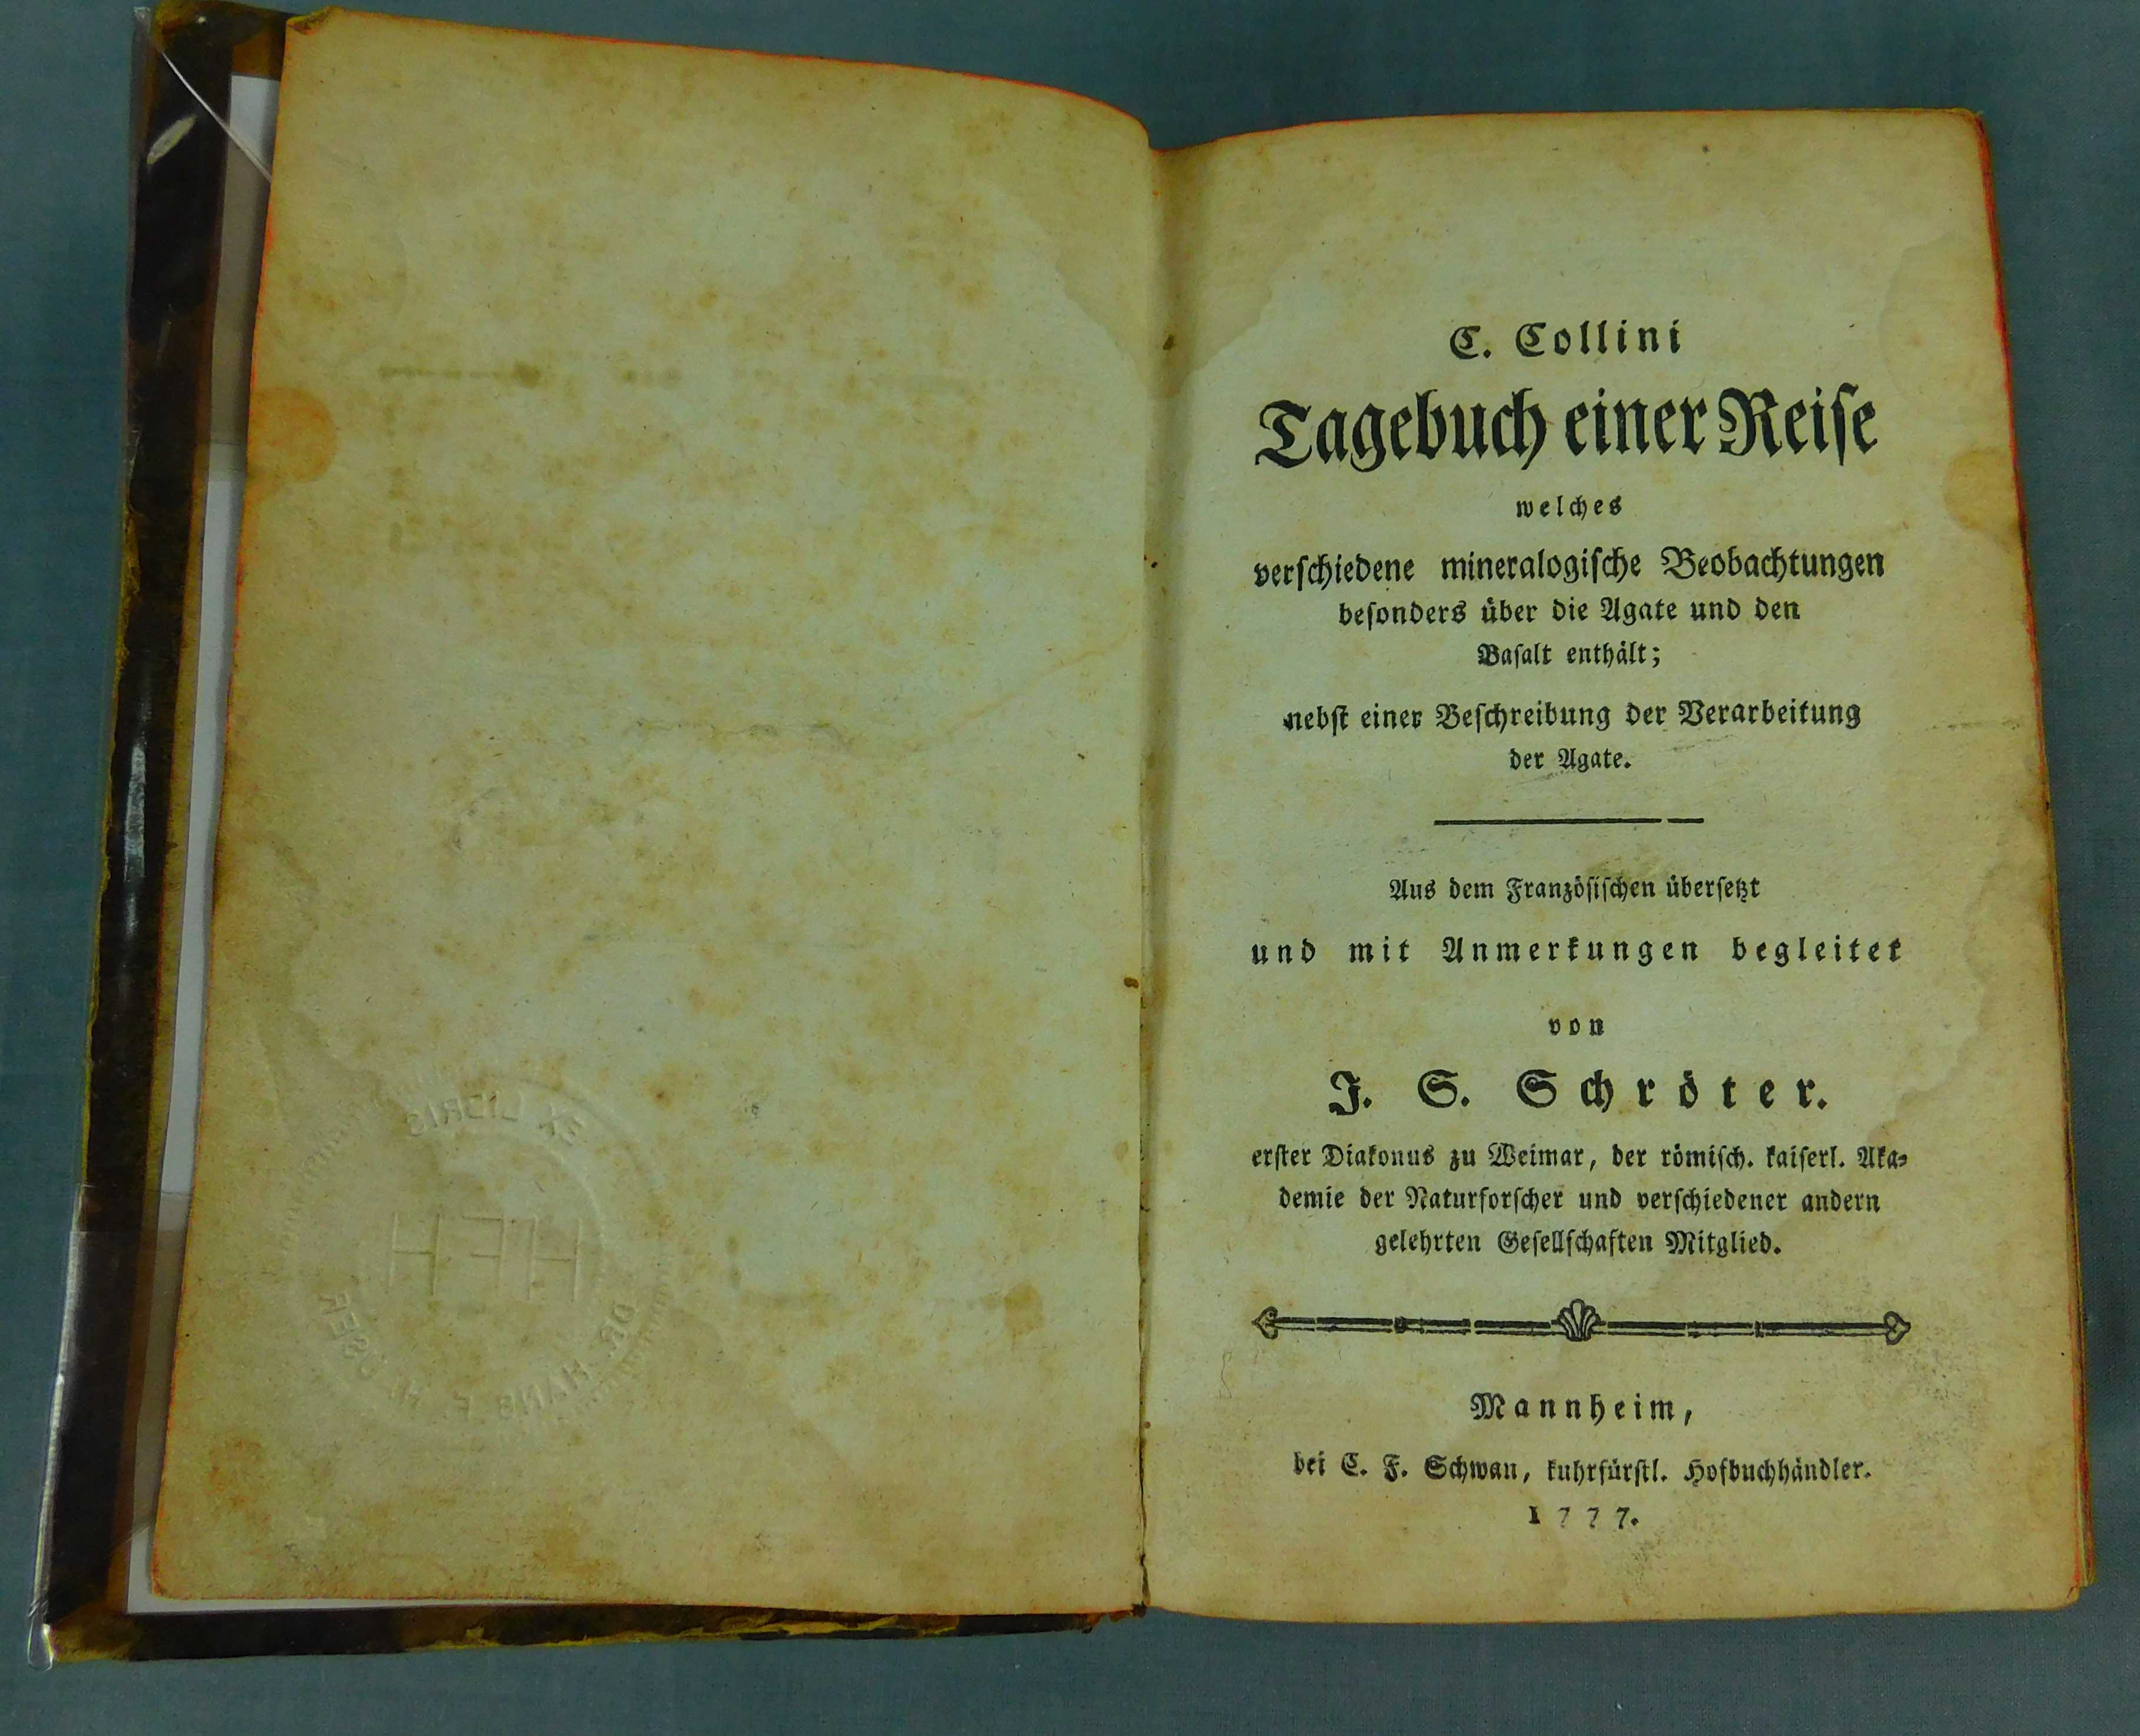 C. Collini. Tagebuch einer Reise. 1777.